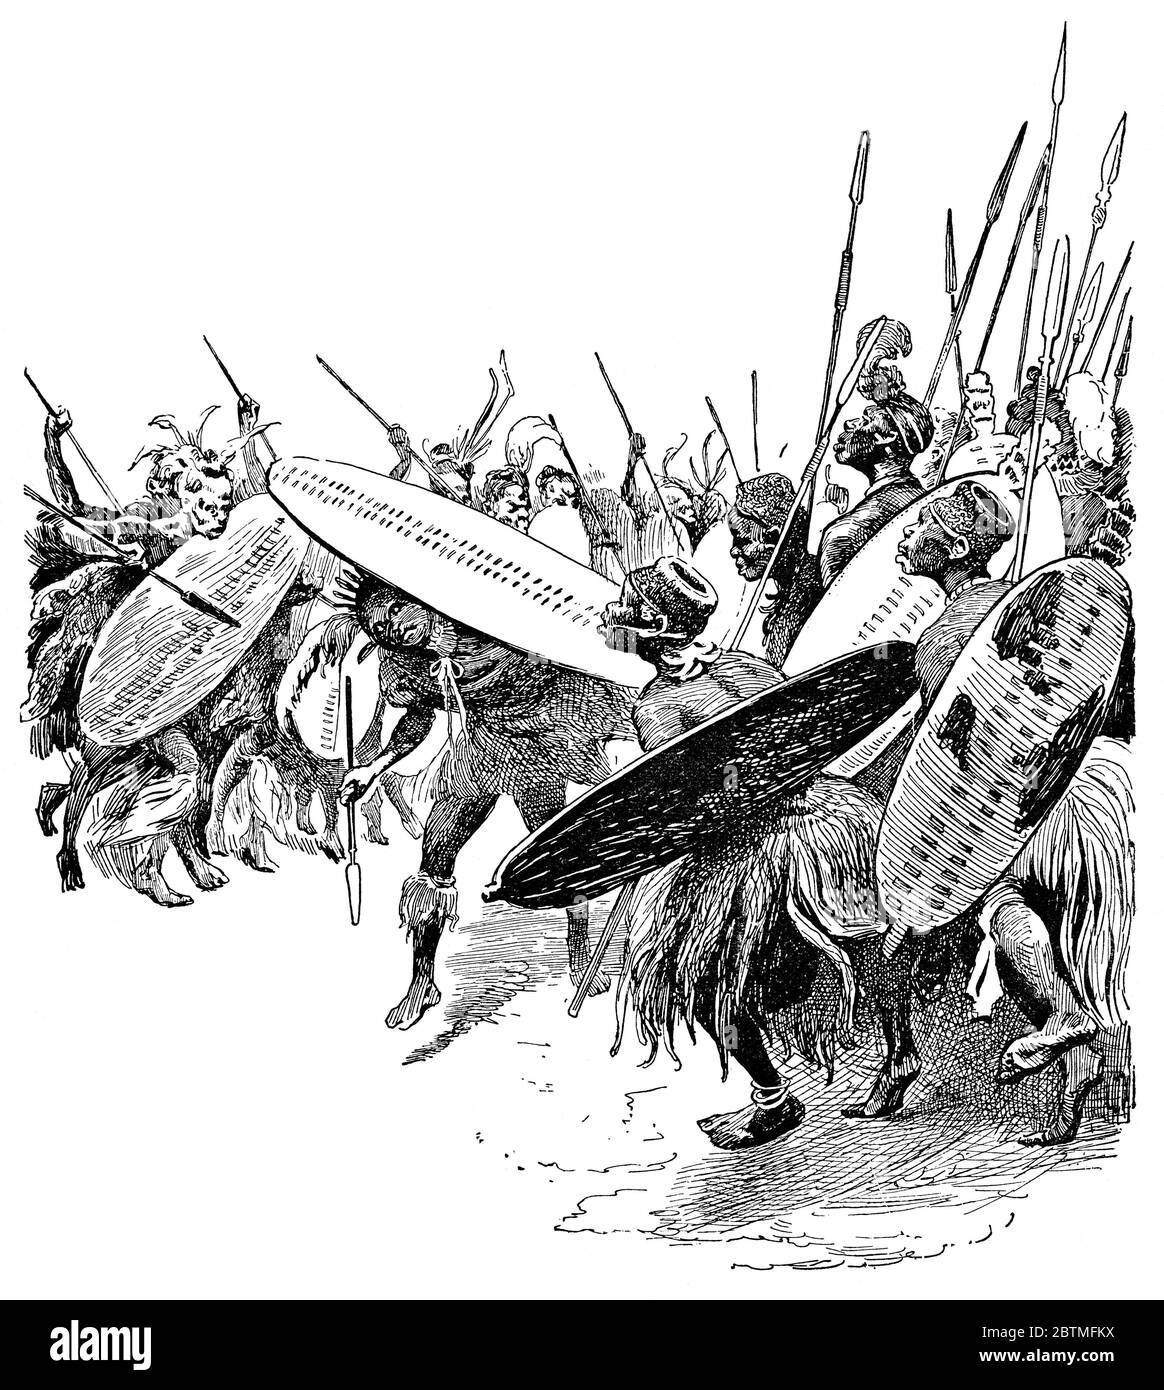 Zulu-Leute, die traditionellen Kriegertanz aufführen. Illustration des 19. Jahrhunderts. Weißer Hintergrund. Stockfoto